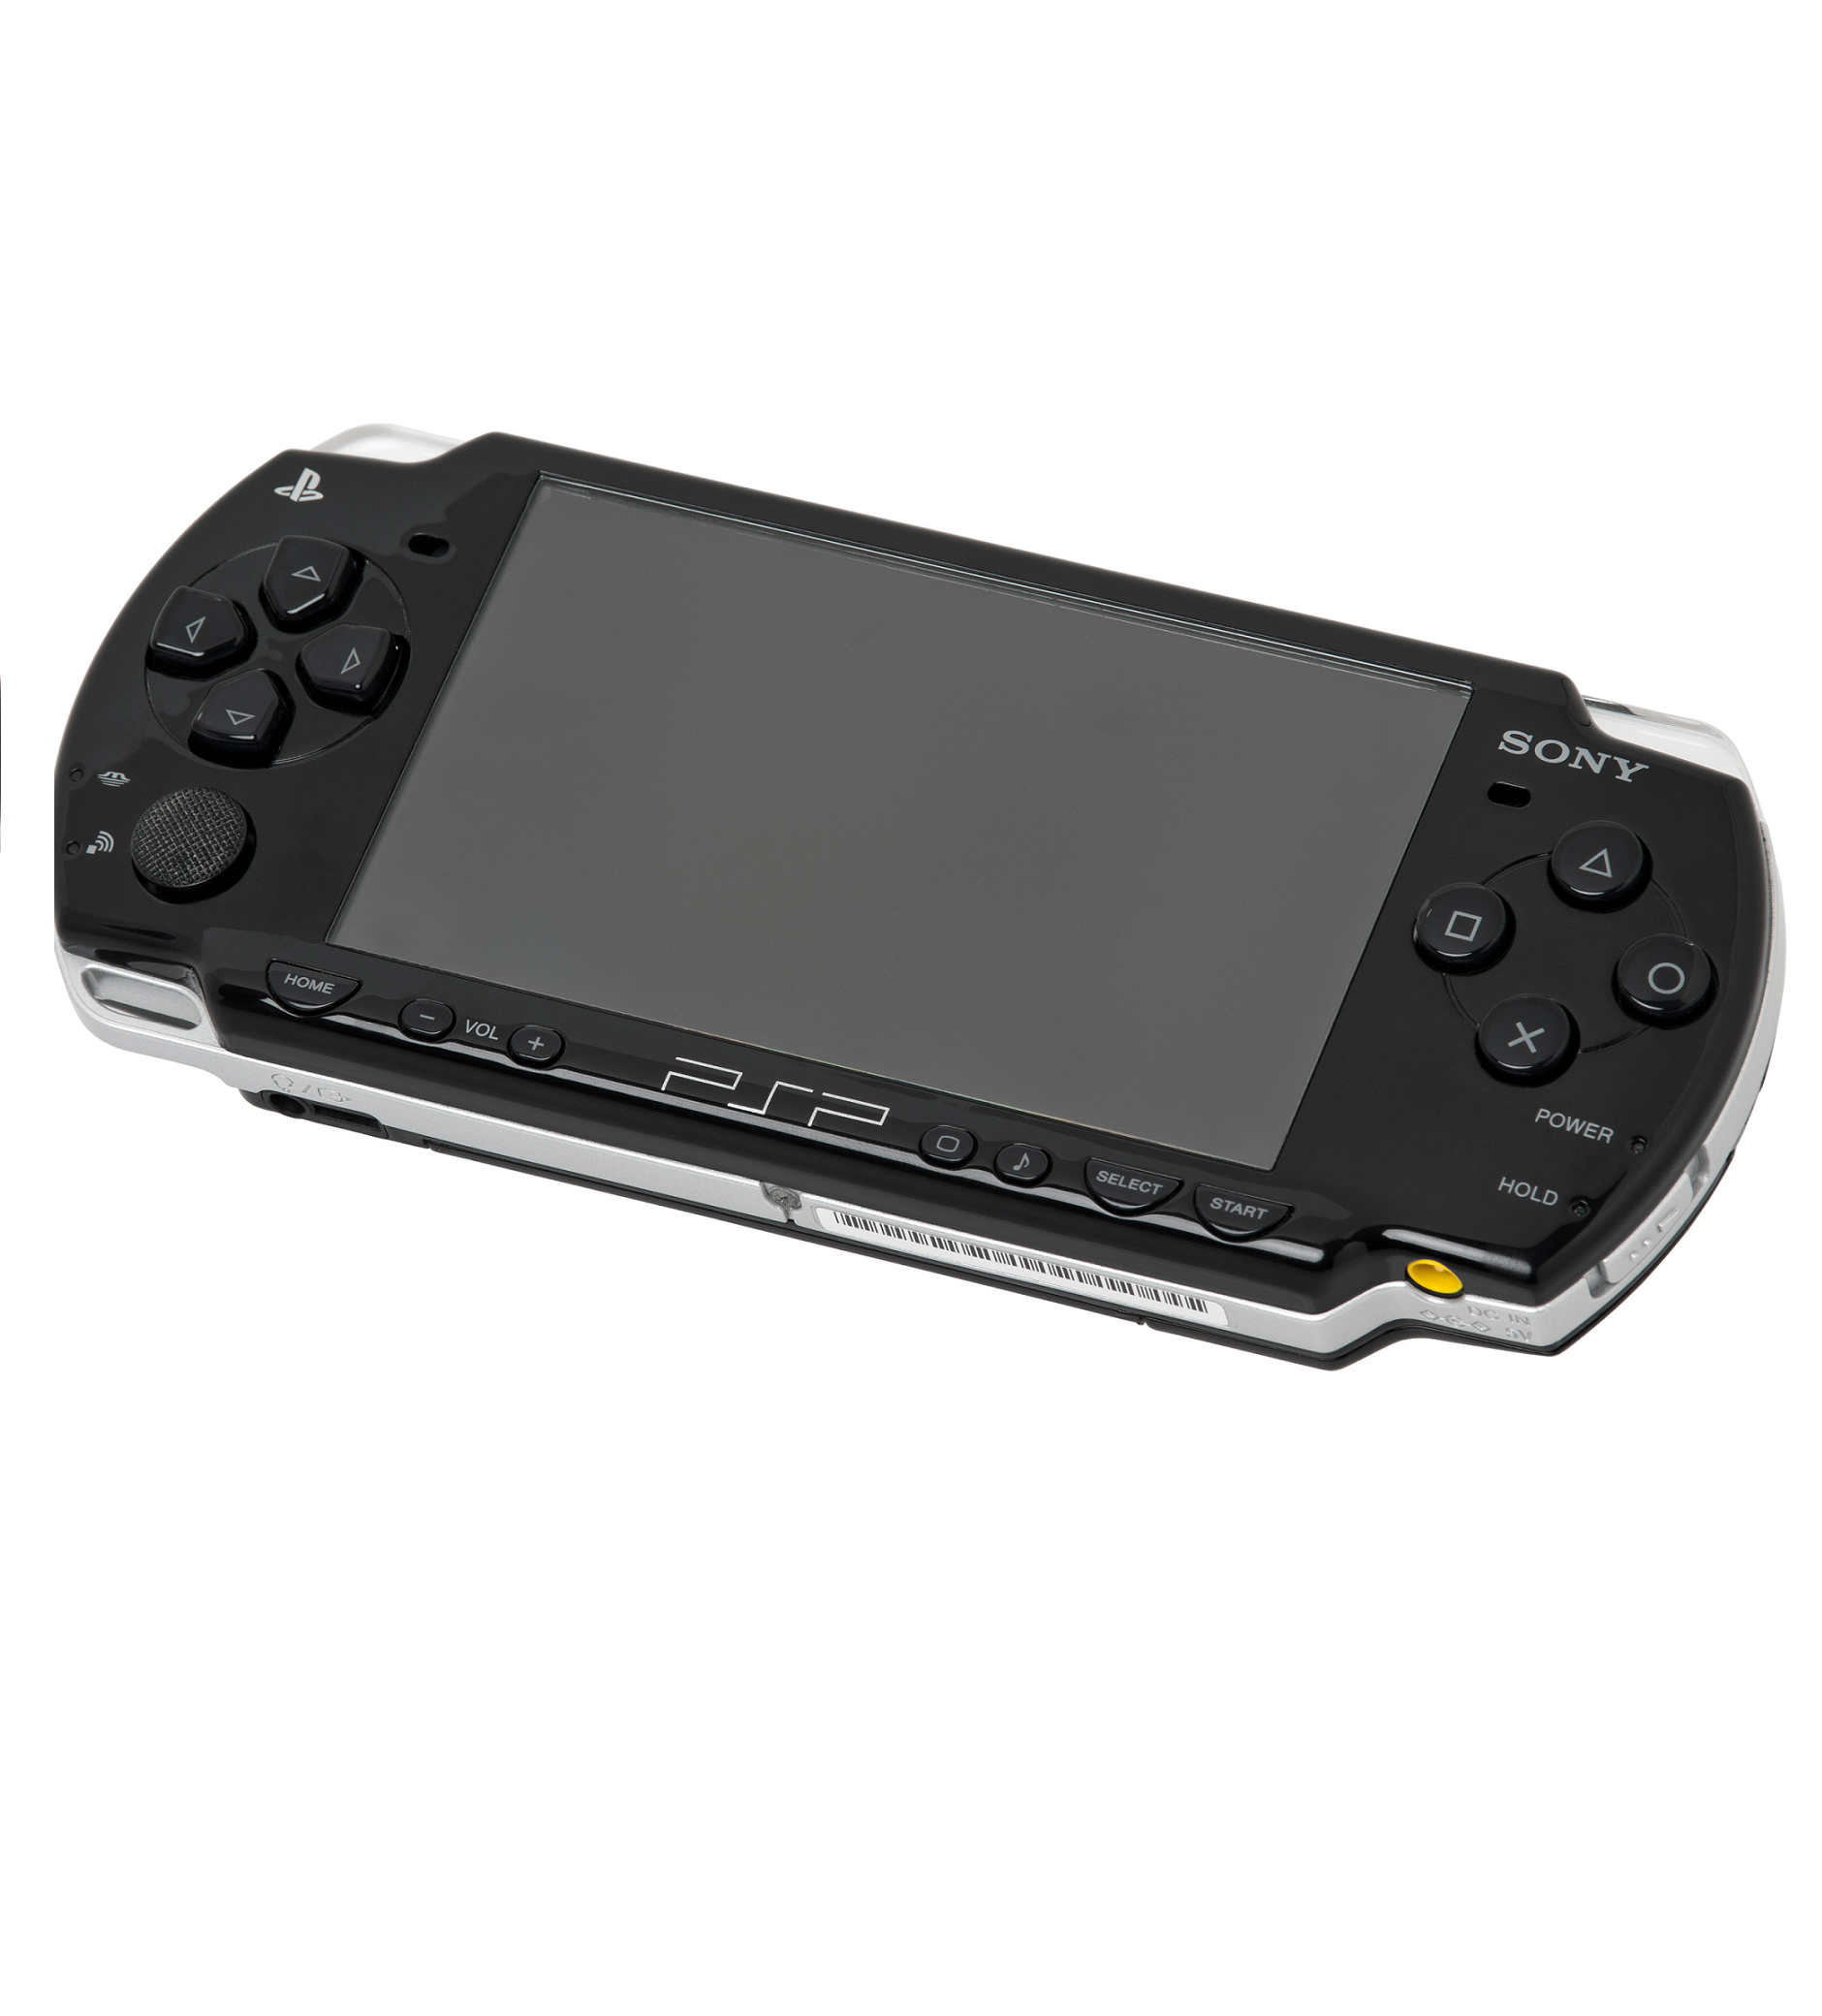 Ps переносная. Игровая приставка Sony PSP 3000. Игровая приставка Sony PLAYSTATION Portable e1000. Sony PLAYSTATION Portable Slim & Lite PSP-3000. Приставка игровая Sony PSP 5.